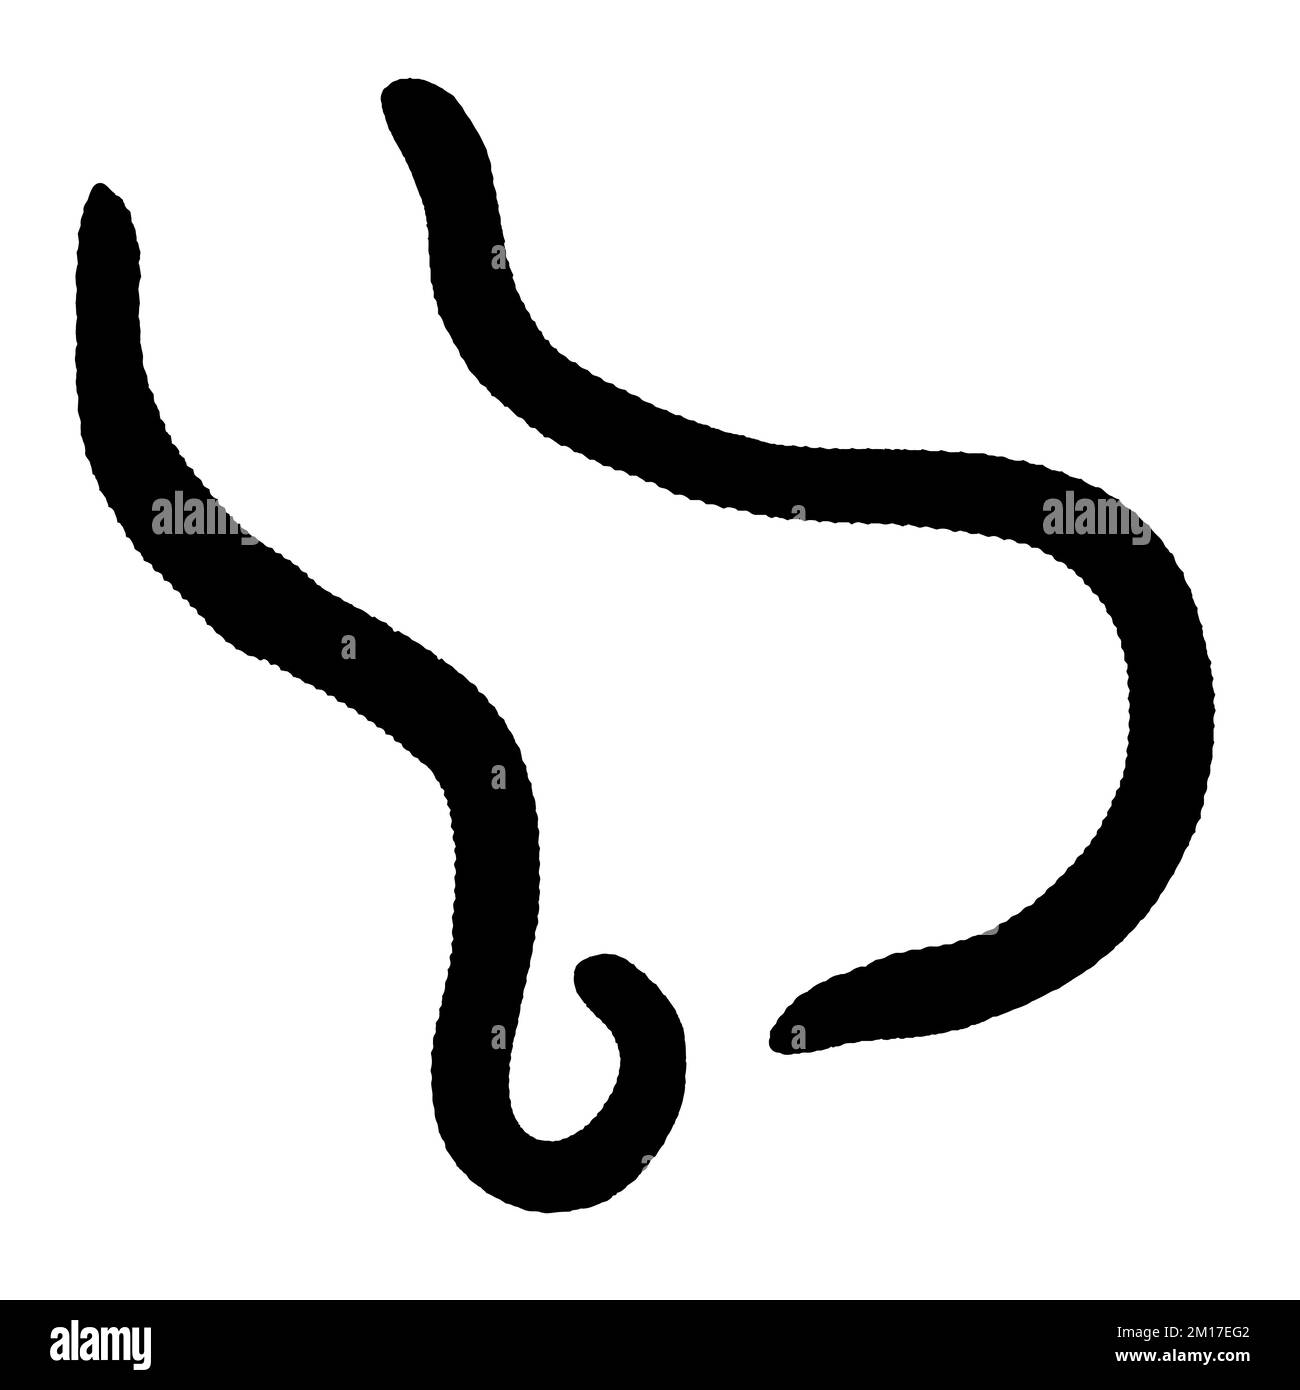 Vector Art of Earthworm Silhouette Stock Vector